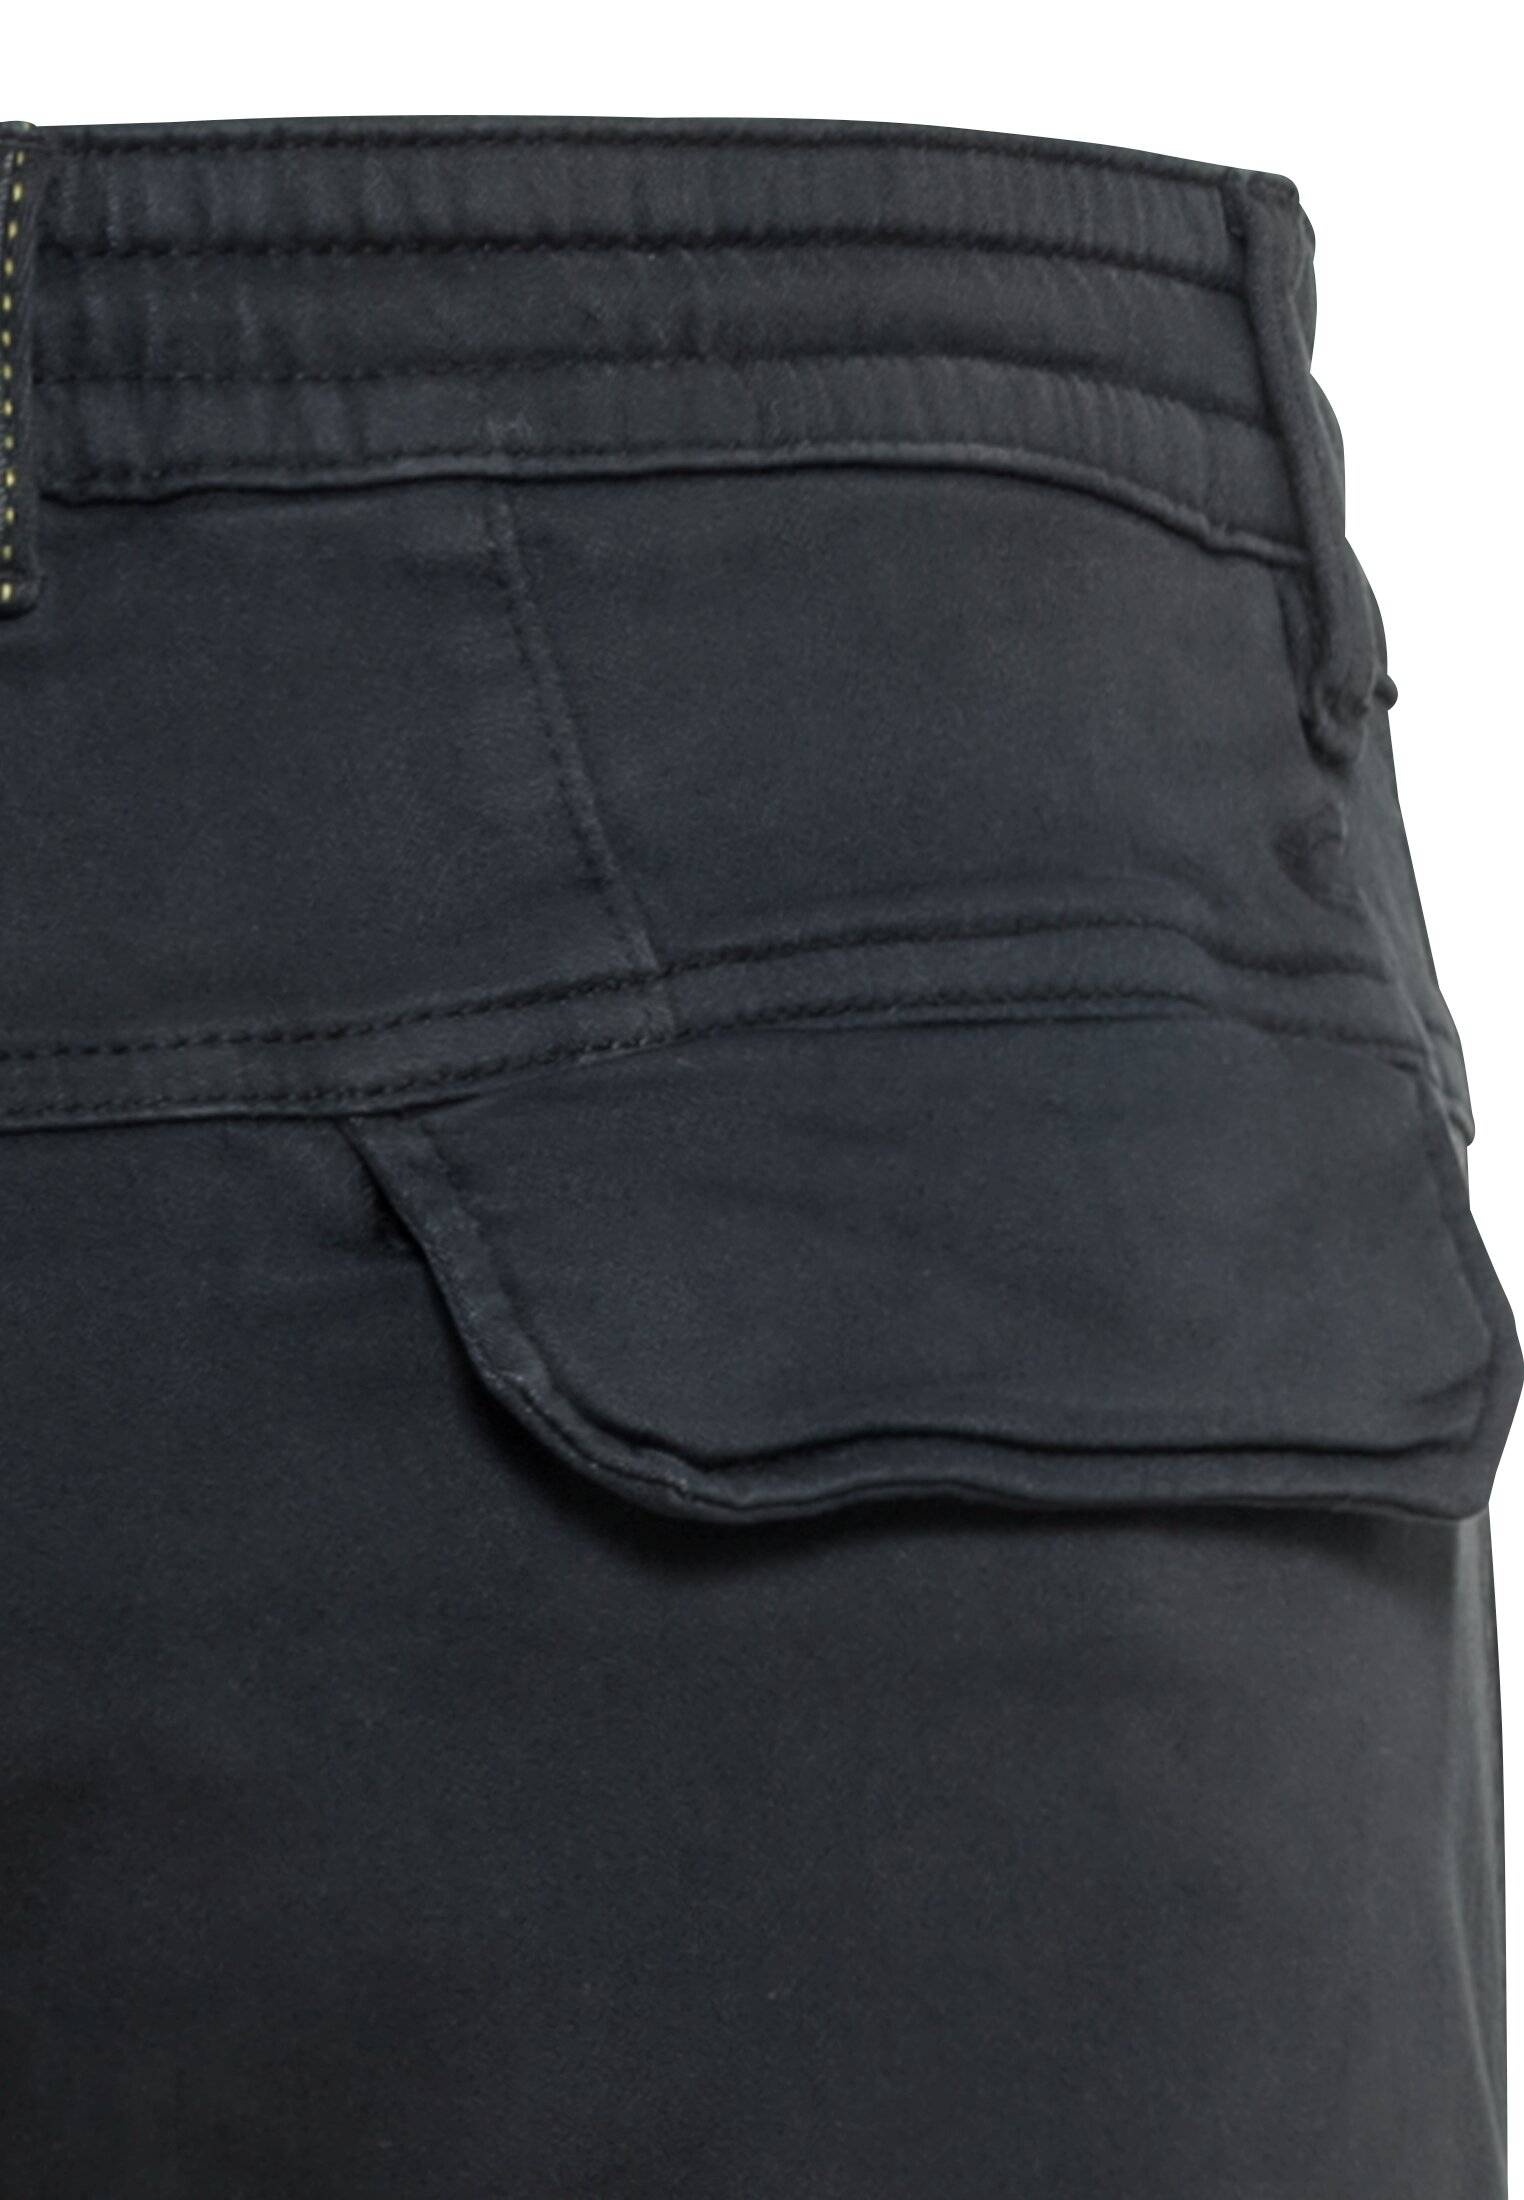 Мужские брюки Camel Active, серые, цвет серый, размер 33 - фото 4